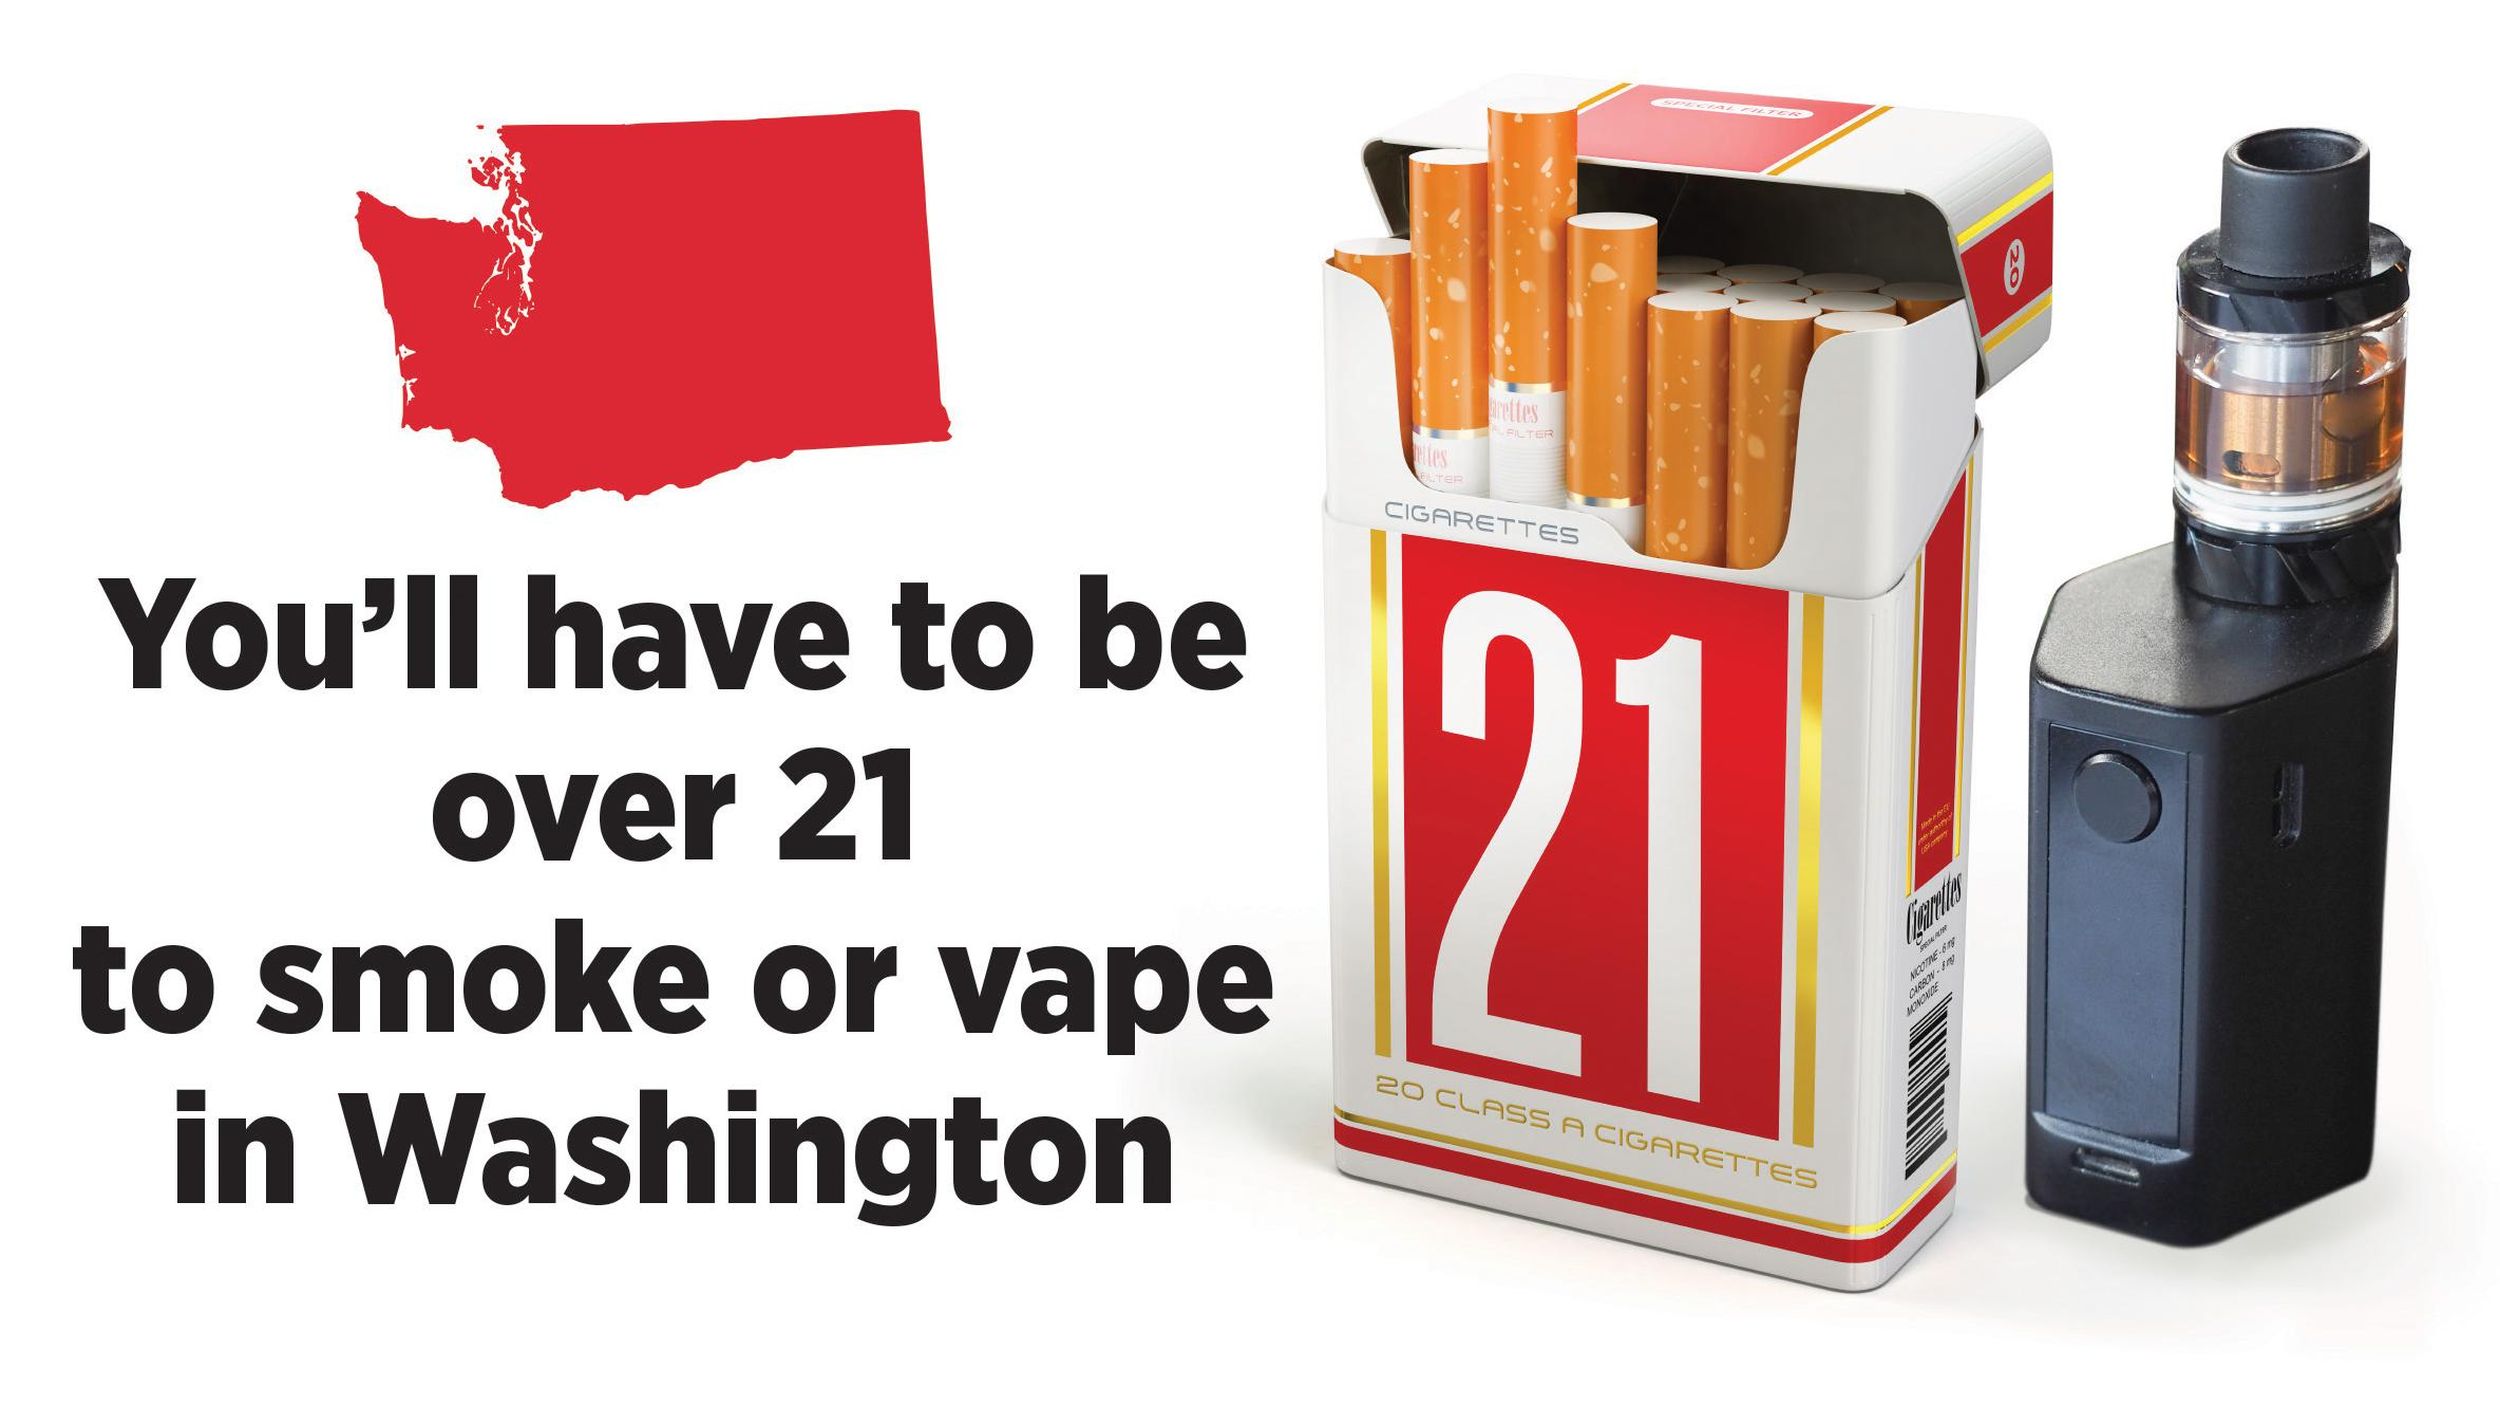 House Votes To Raise Smoking Age To 21 The Spokesman Review